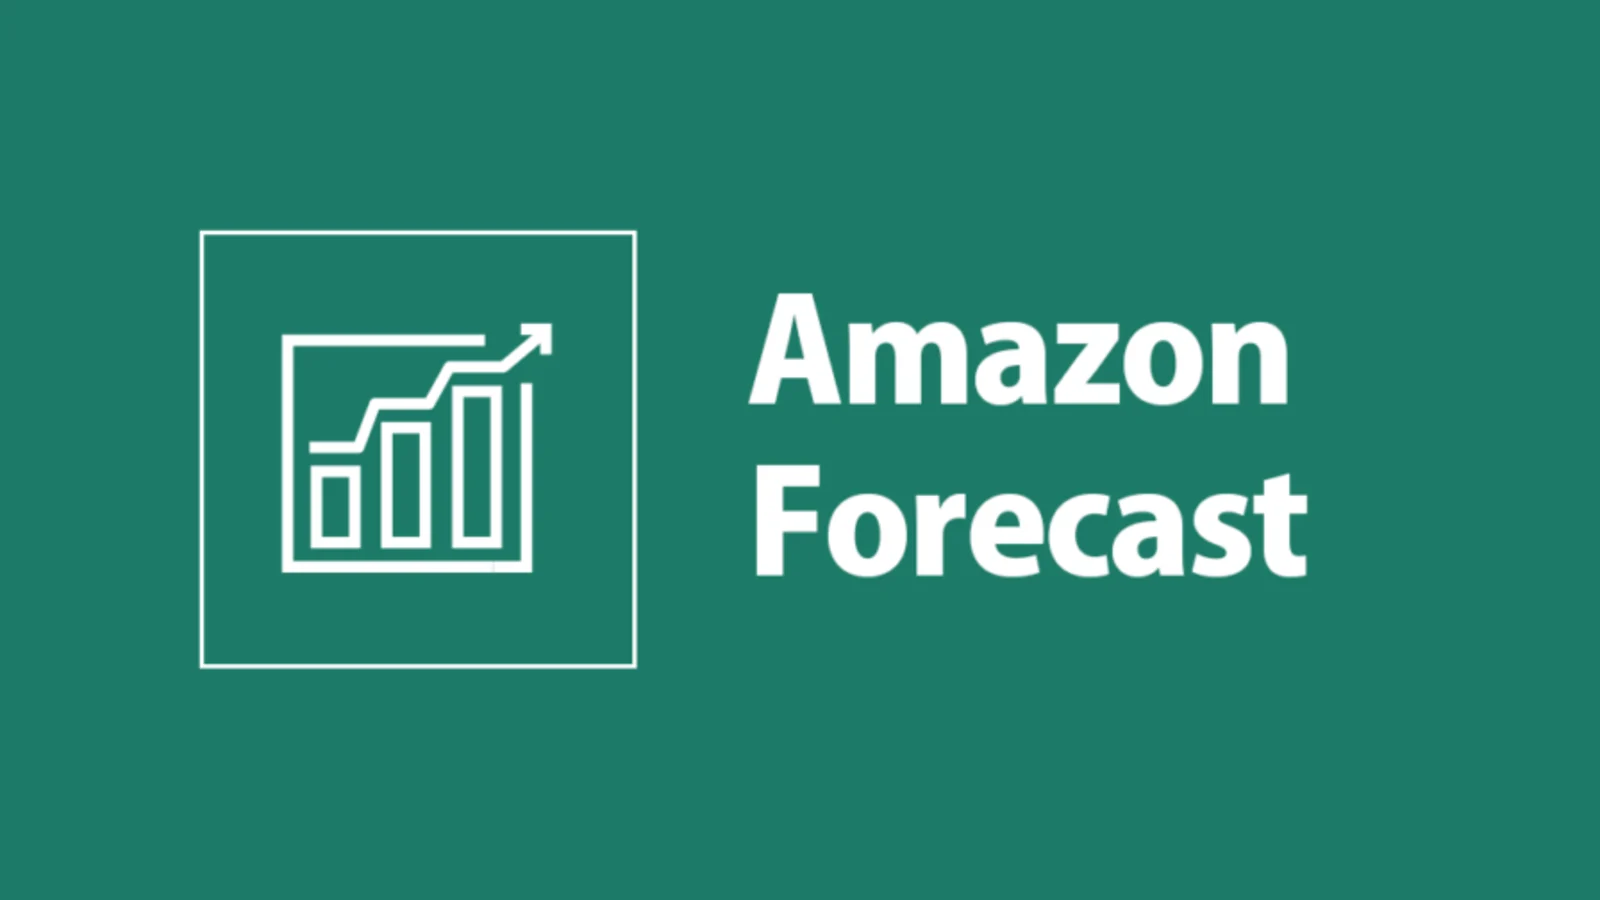 Amazon Forecast